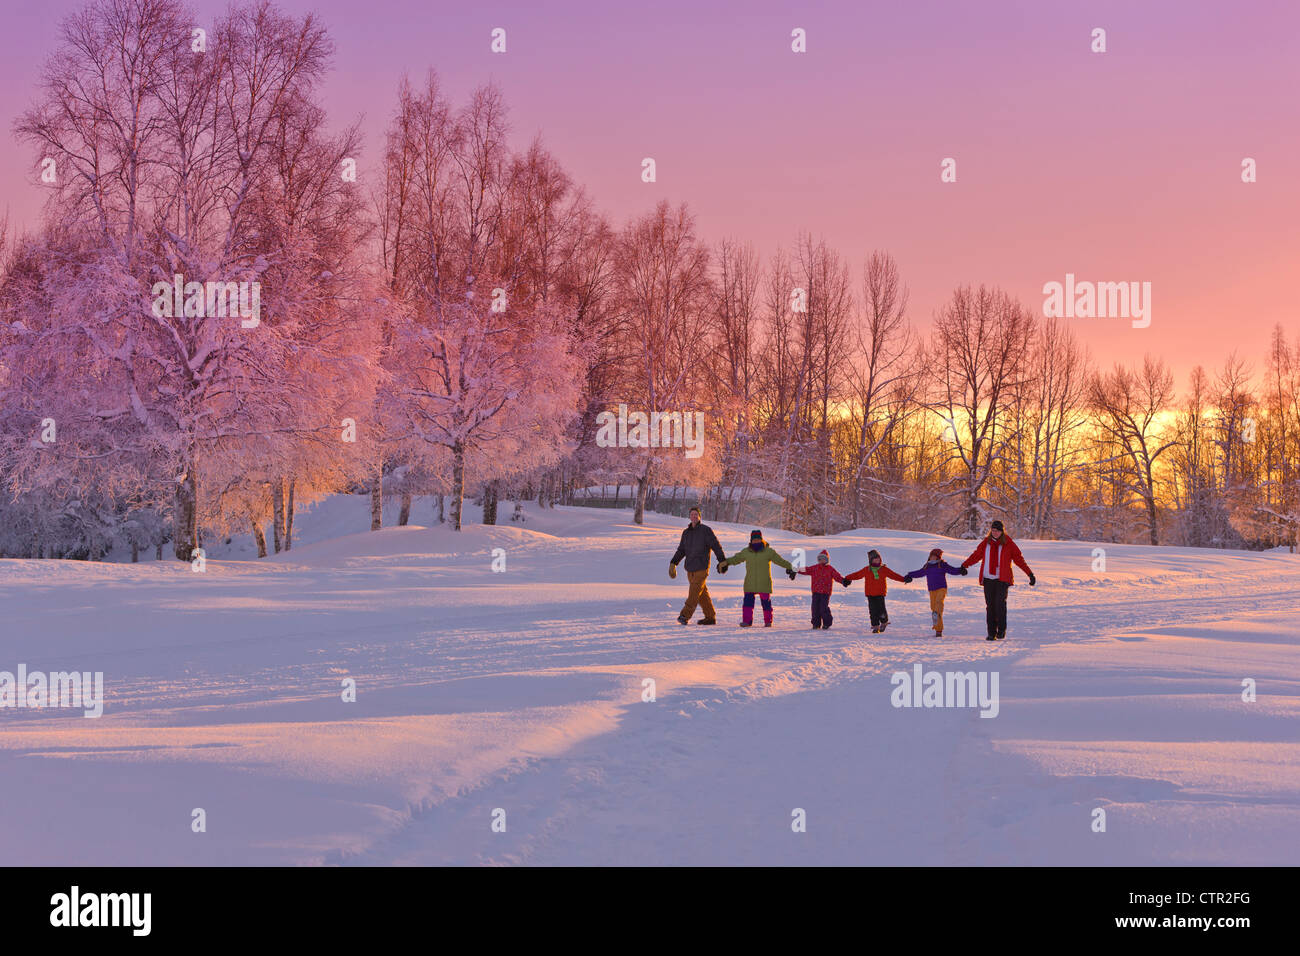 Gruppo familiare tenendo le mani a piedi sul percorso di neve tramonto bosco di betulle, in background Jack russo Springs Park centromeridionale di ancoraggio Foto Stock